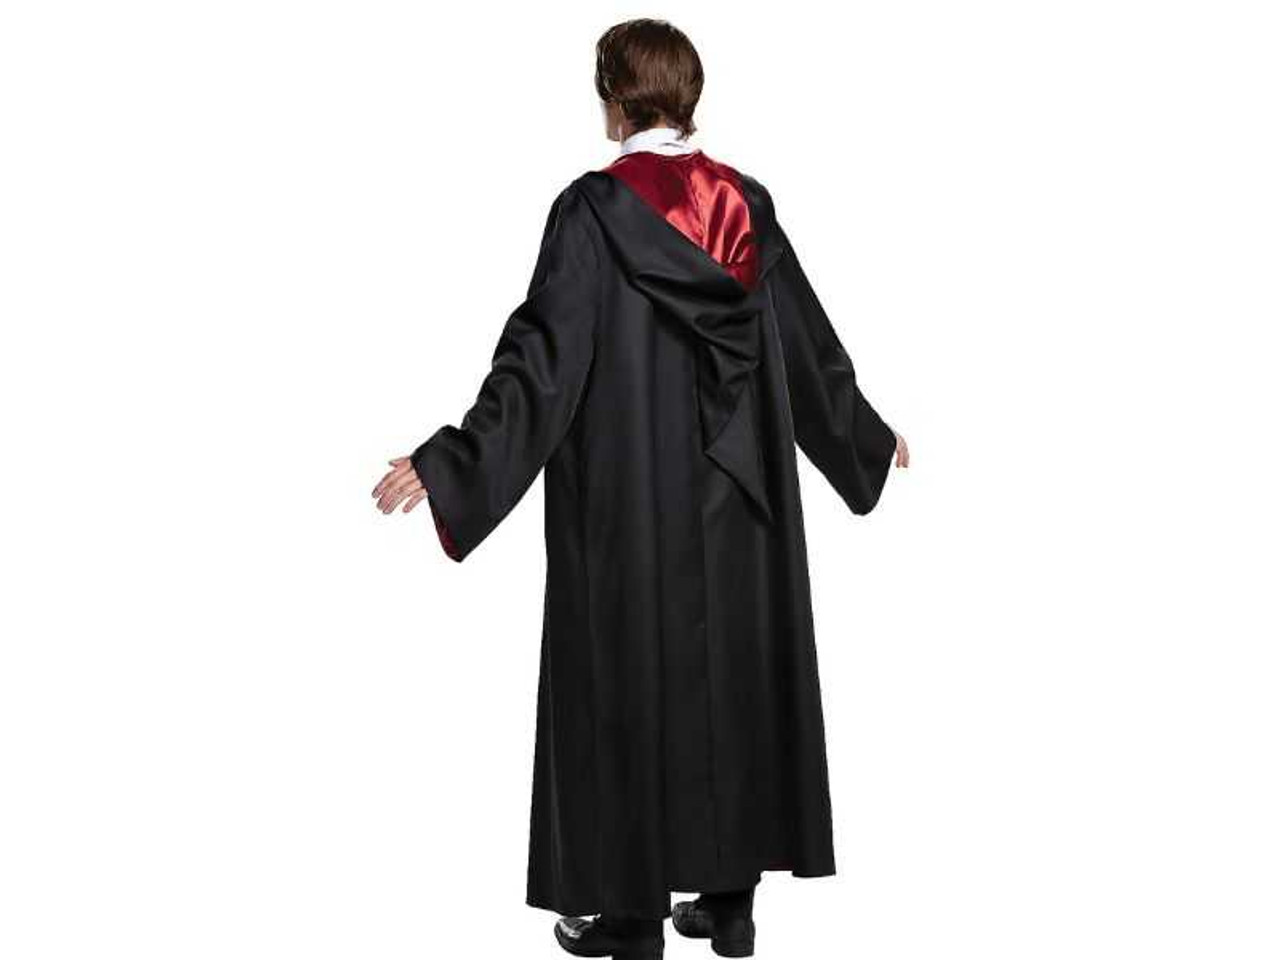 Adult Prestige Harry Potter Gryffindor Robe